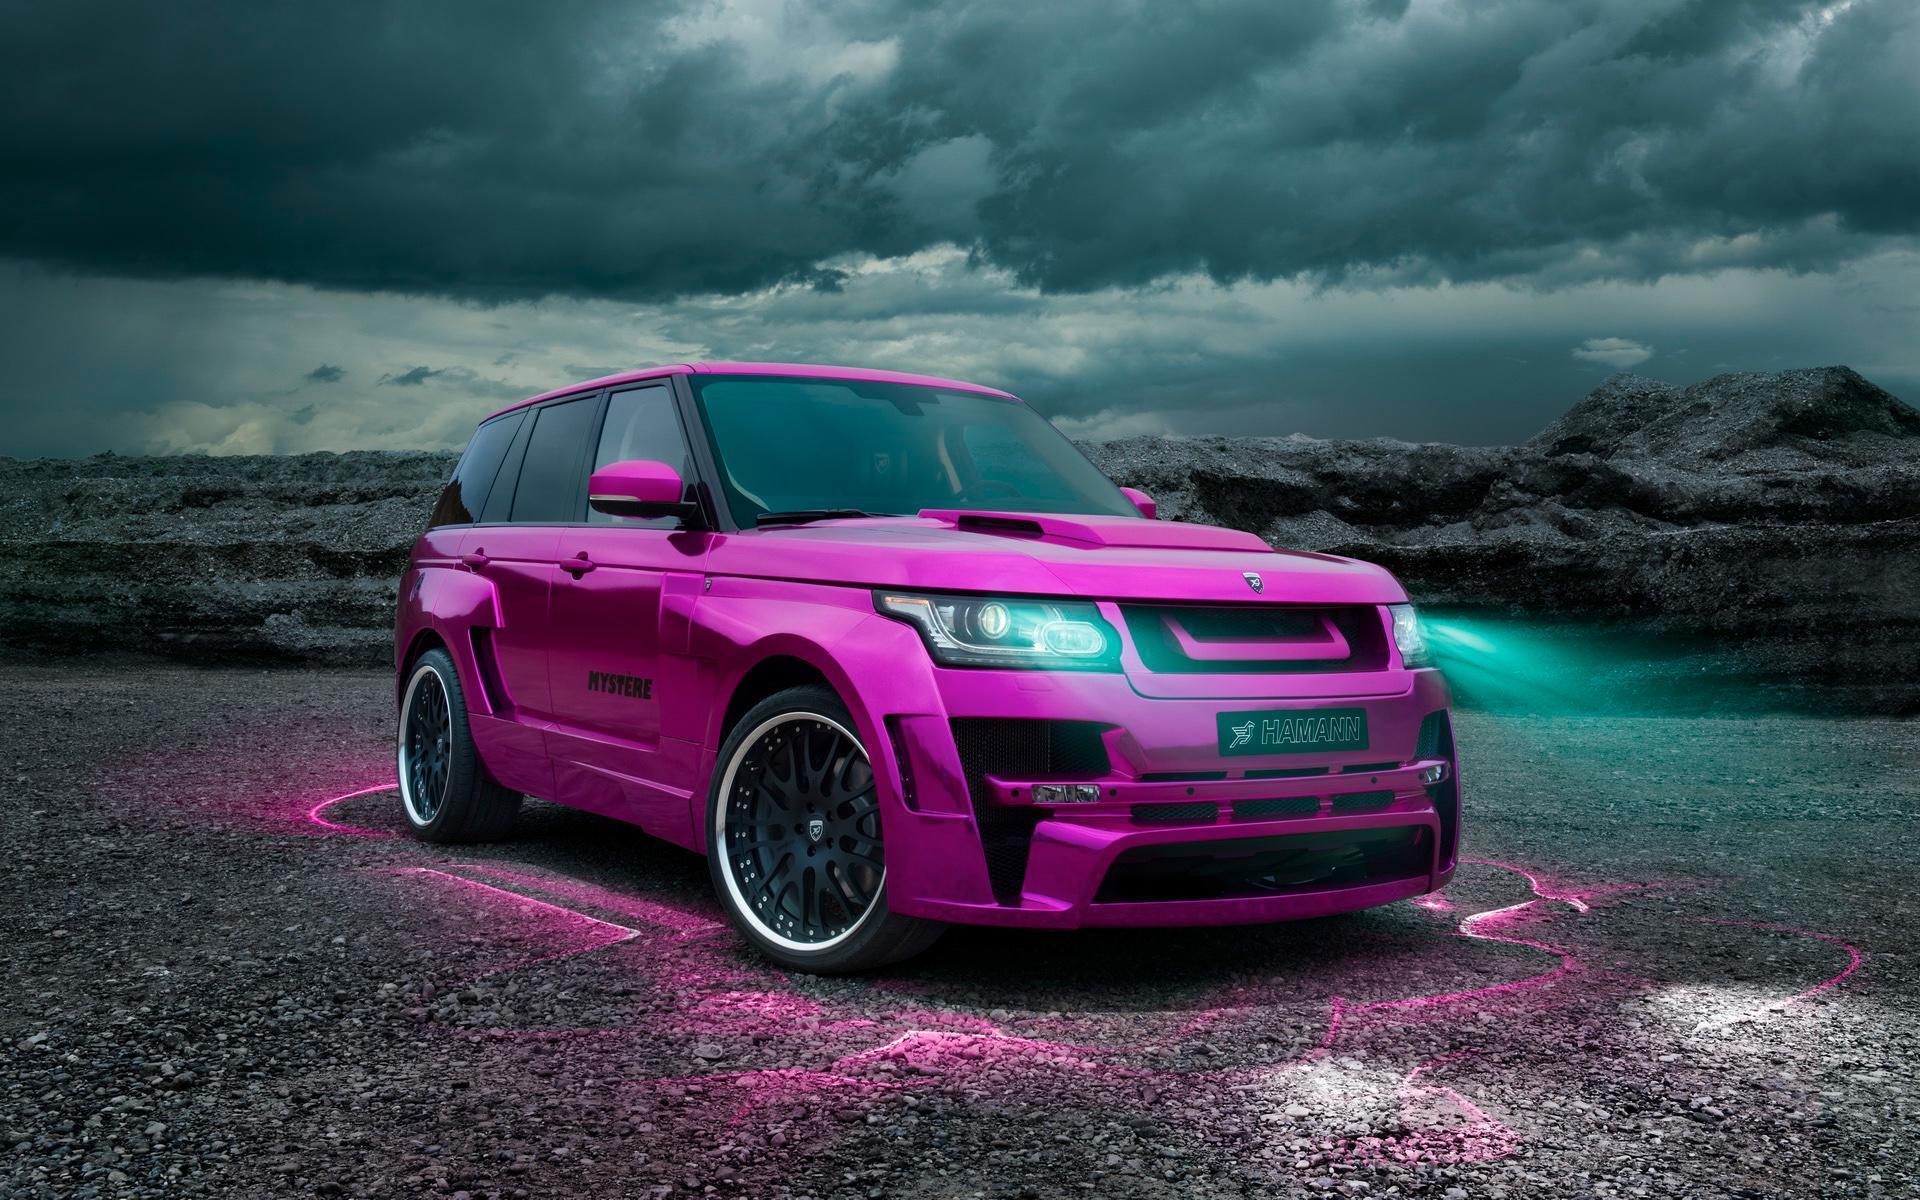 Range Rover Sport 2015 Desktop Wallpapers 1600x1200 - Wallpaper Cave